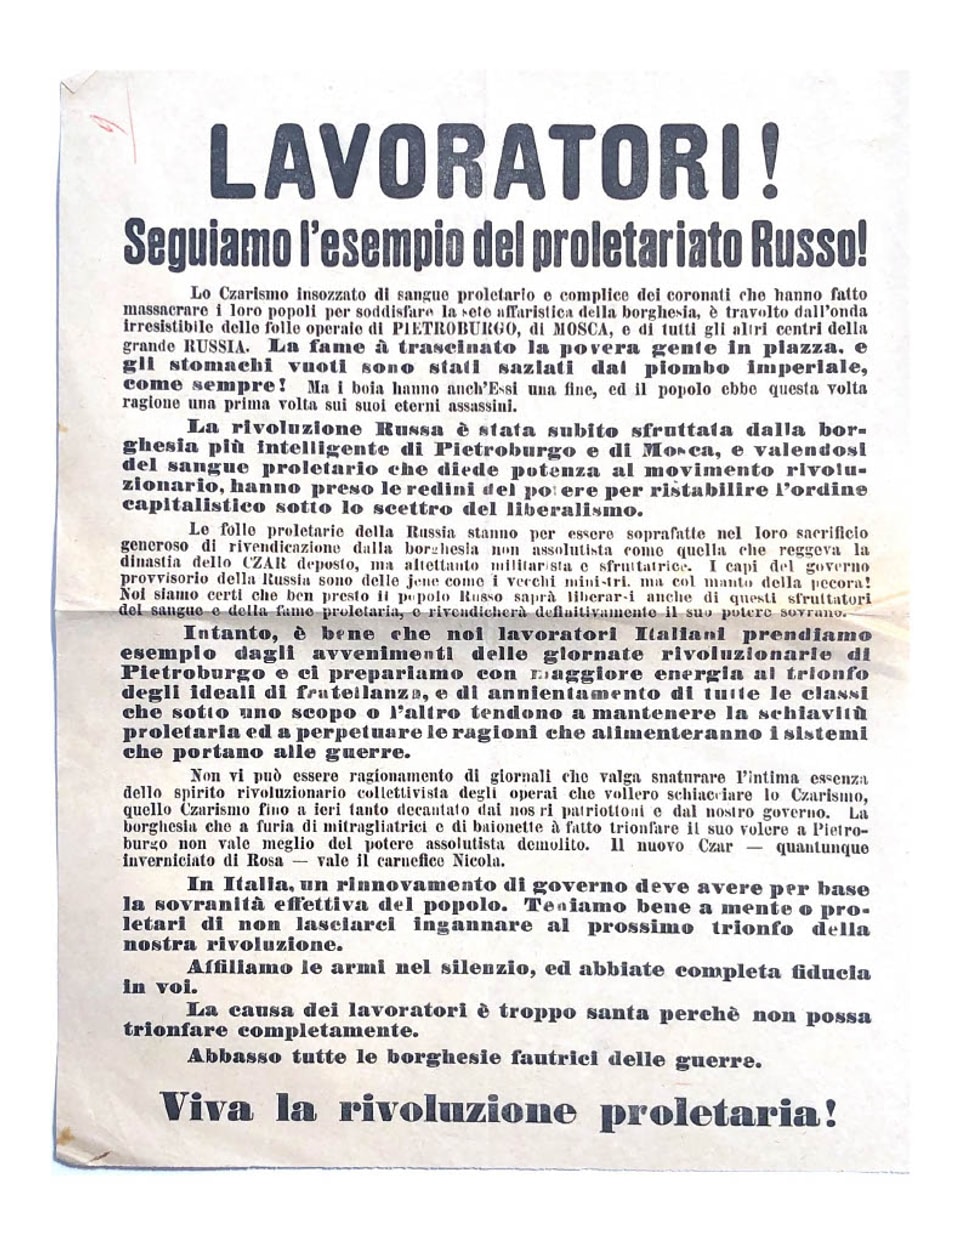 Flugblatt in italienischer Sprache, das zu anarchischem Umsturz aufruft.